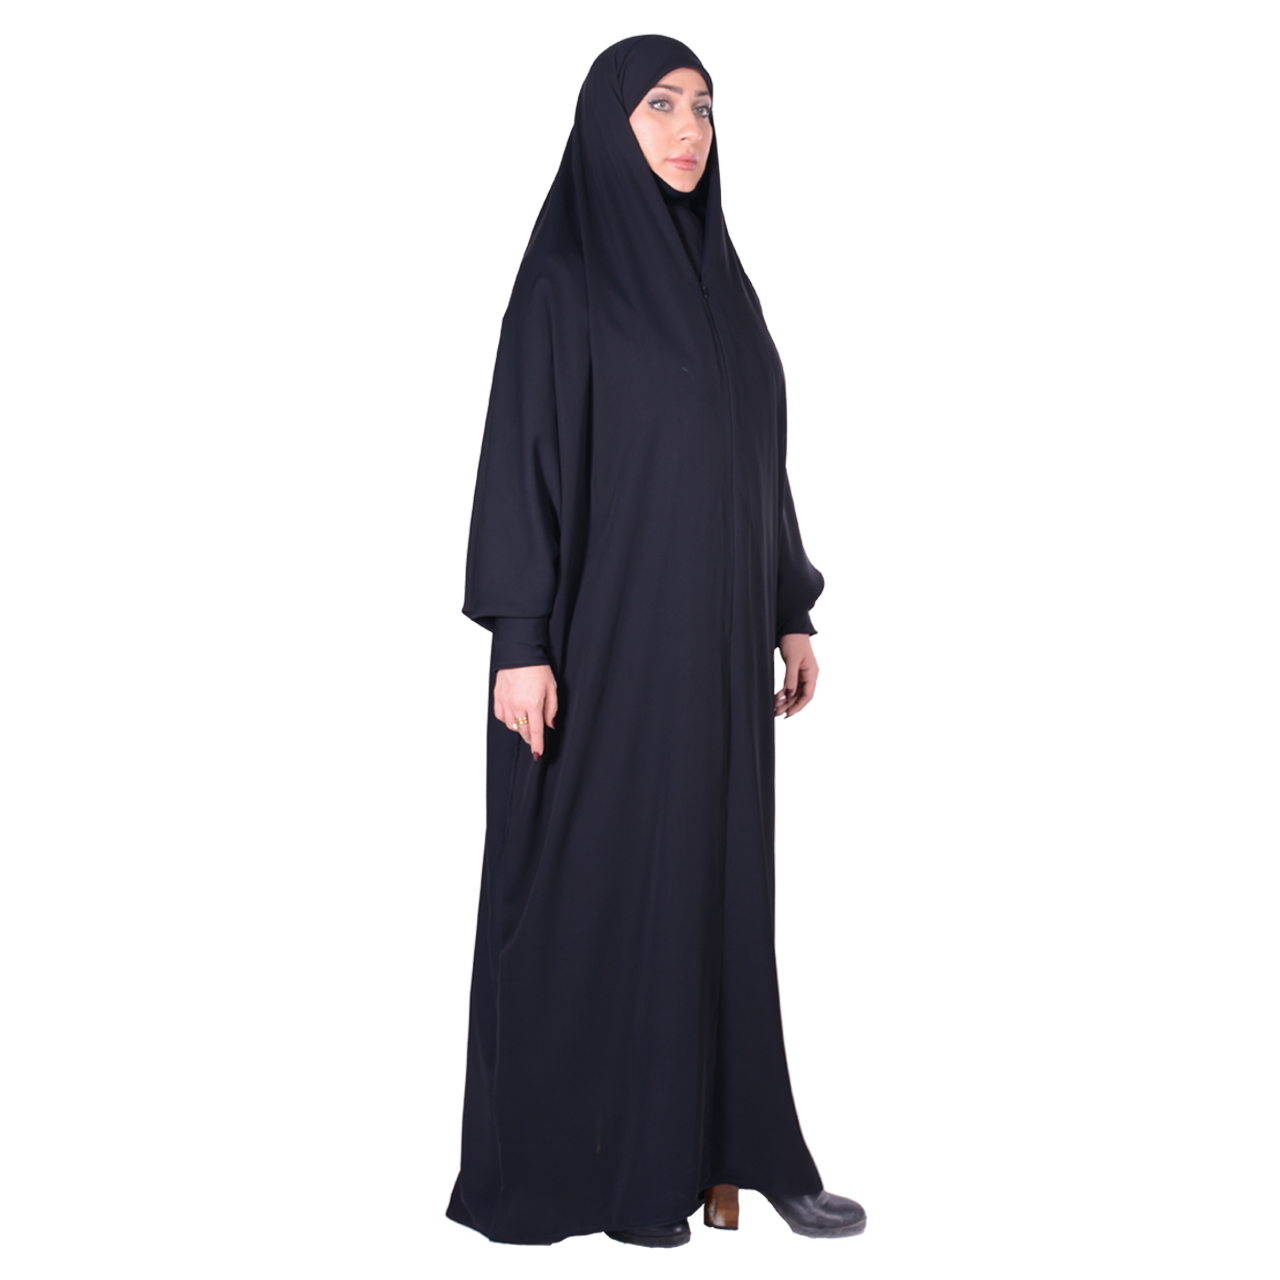 نکته خرید - قیمت روز چادر جلابیب شهر حجاب مدل زینت کرپناز ایرانی VIP خرید